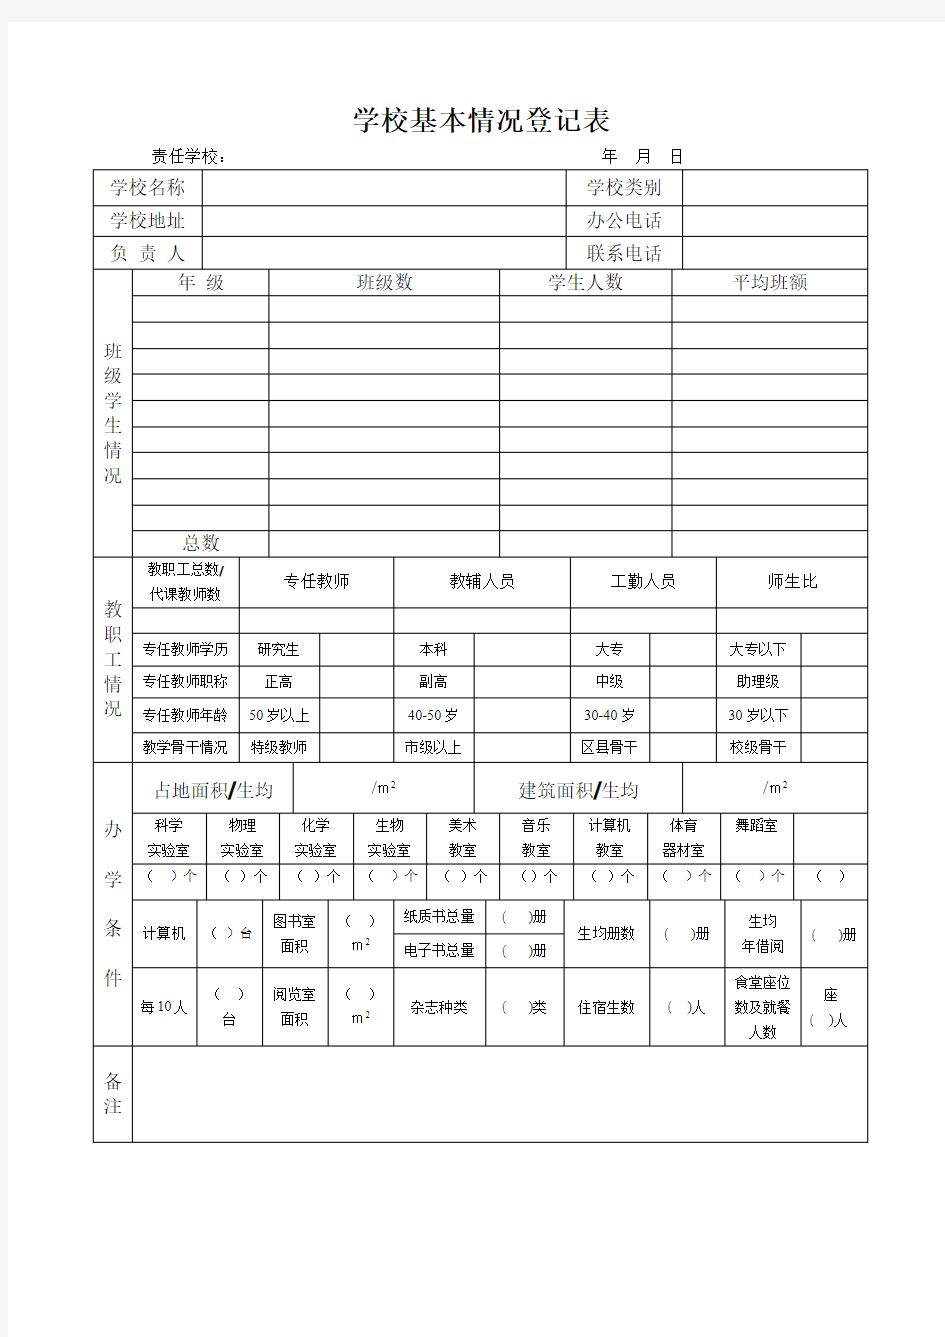 学校基本情况登记表(打印版)